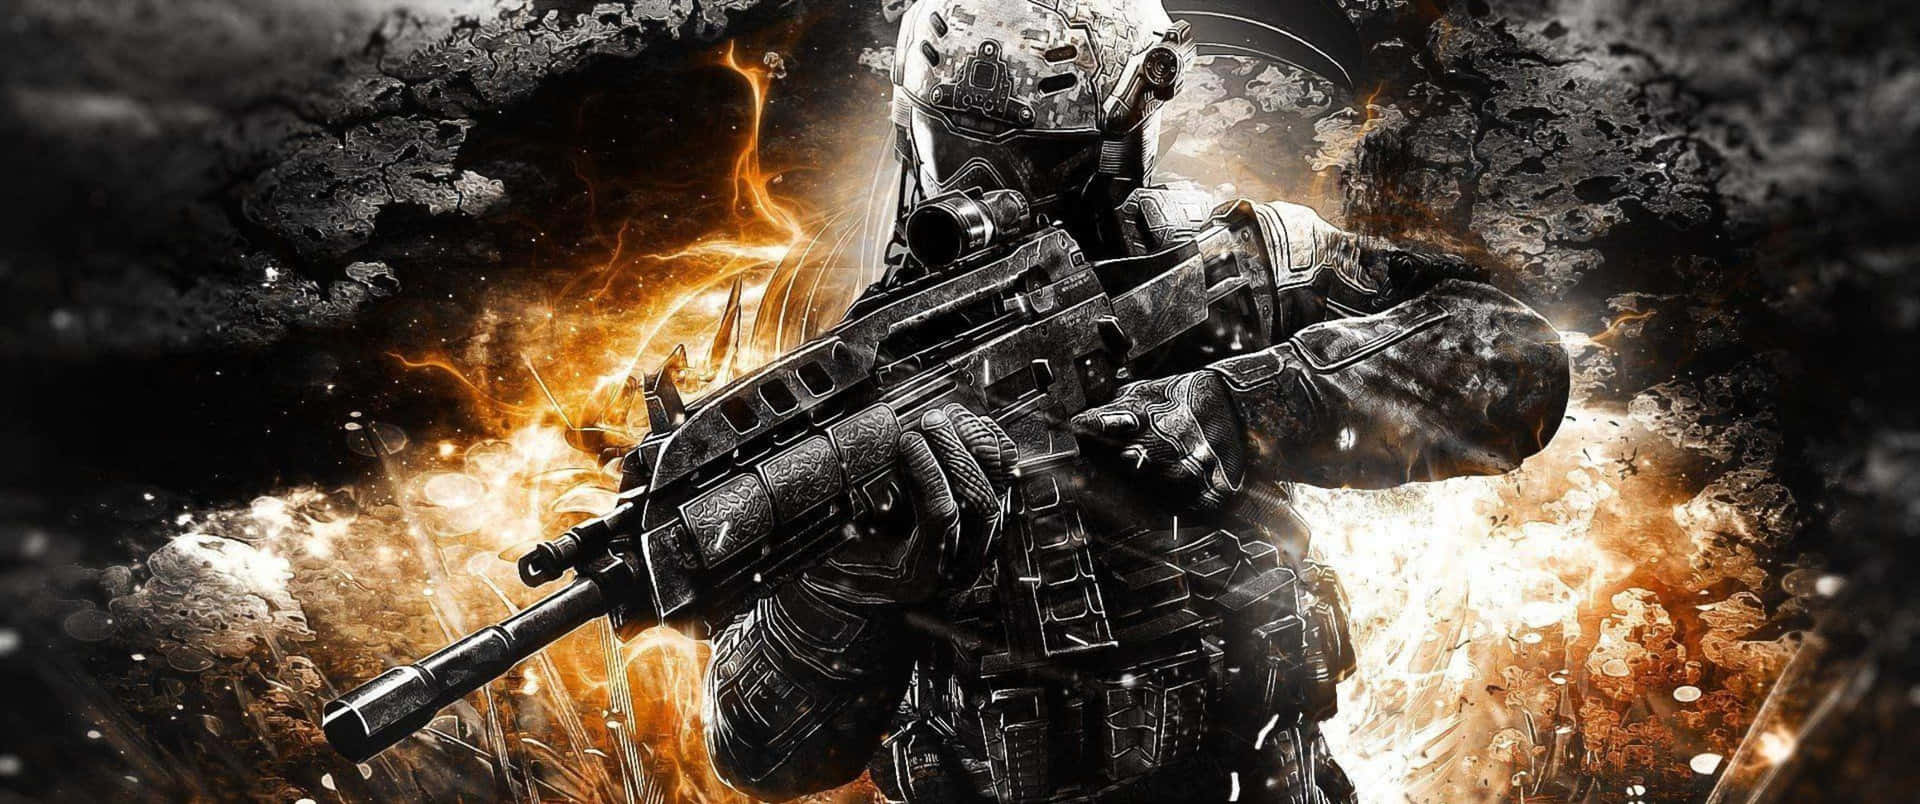 Combattinel Nuovo Call Of Duty: Black Ops 4 - Vivi Un Livello Di Intensità Completamente Nuovo.